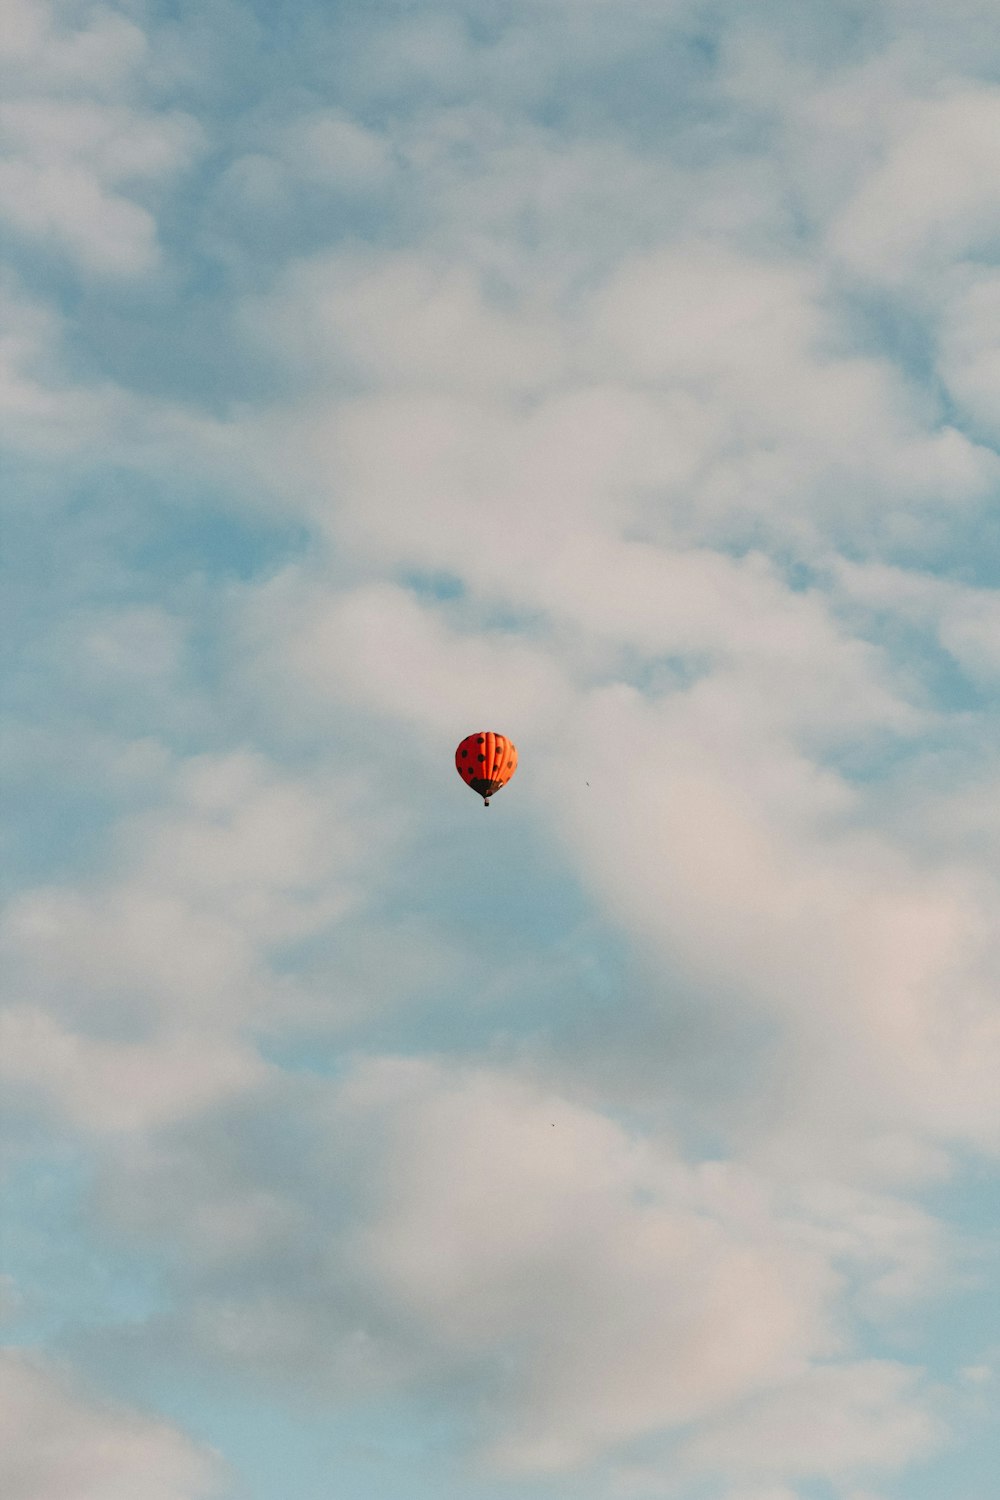 a hot air balloon flying through a cloudy blue sky